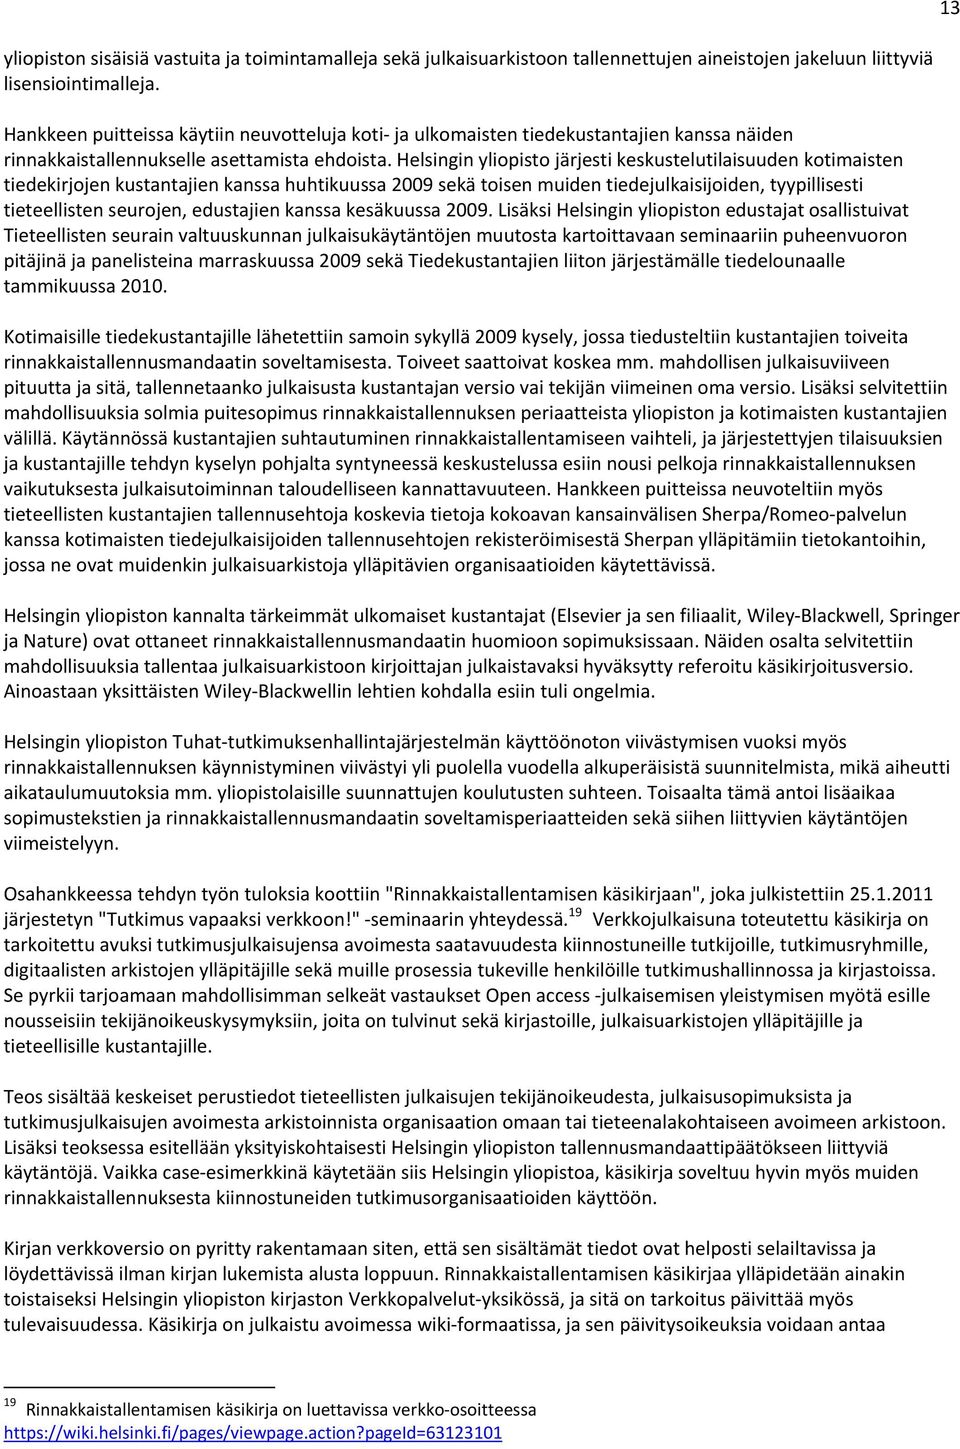 Helsingin yliopisto järjesti keskustelutilaisuuden kotimaisten tiedekirjojen kustantajien kanssa huhtikuussa 2009 sekä toisen muiden tiedejulkaisijoiden, tyypillisesti tieteellisten seurojen,